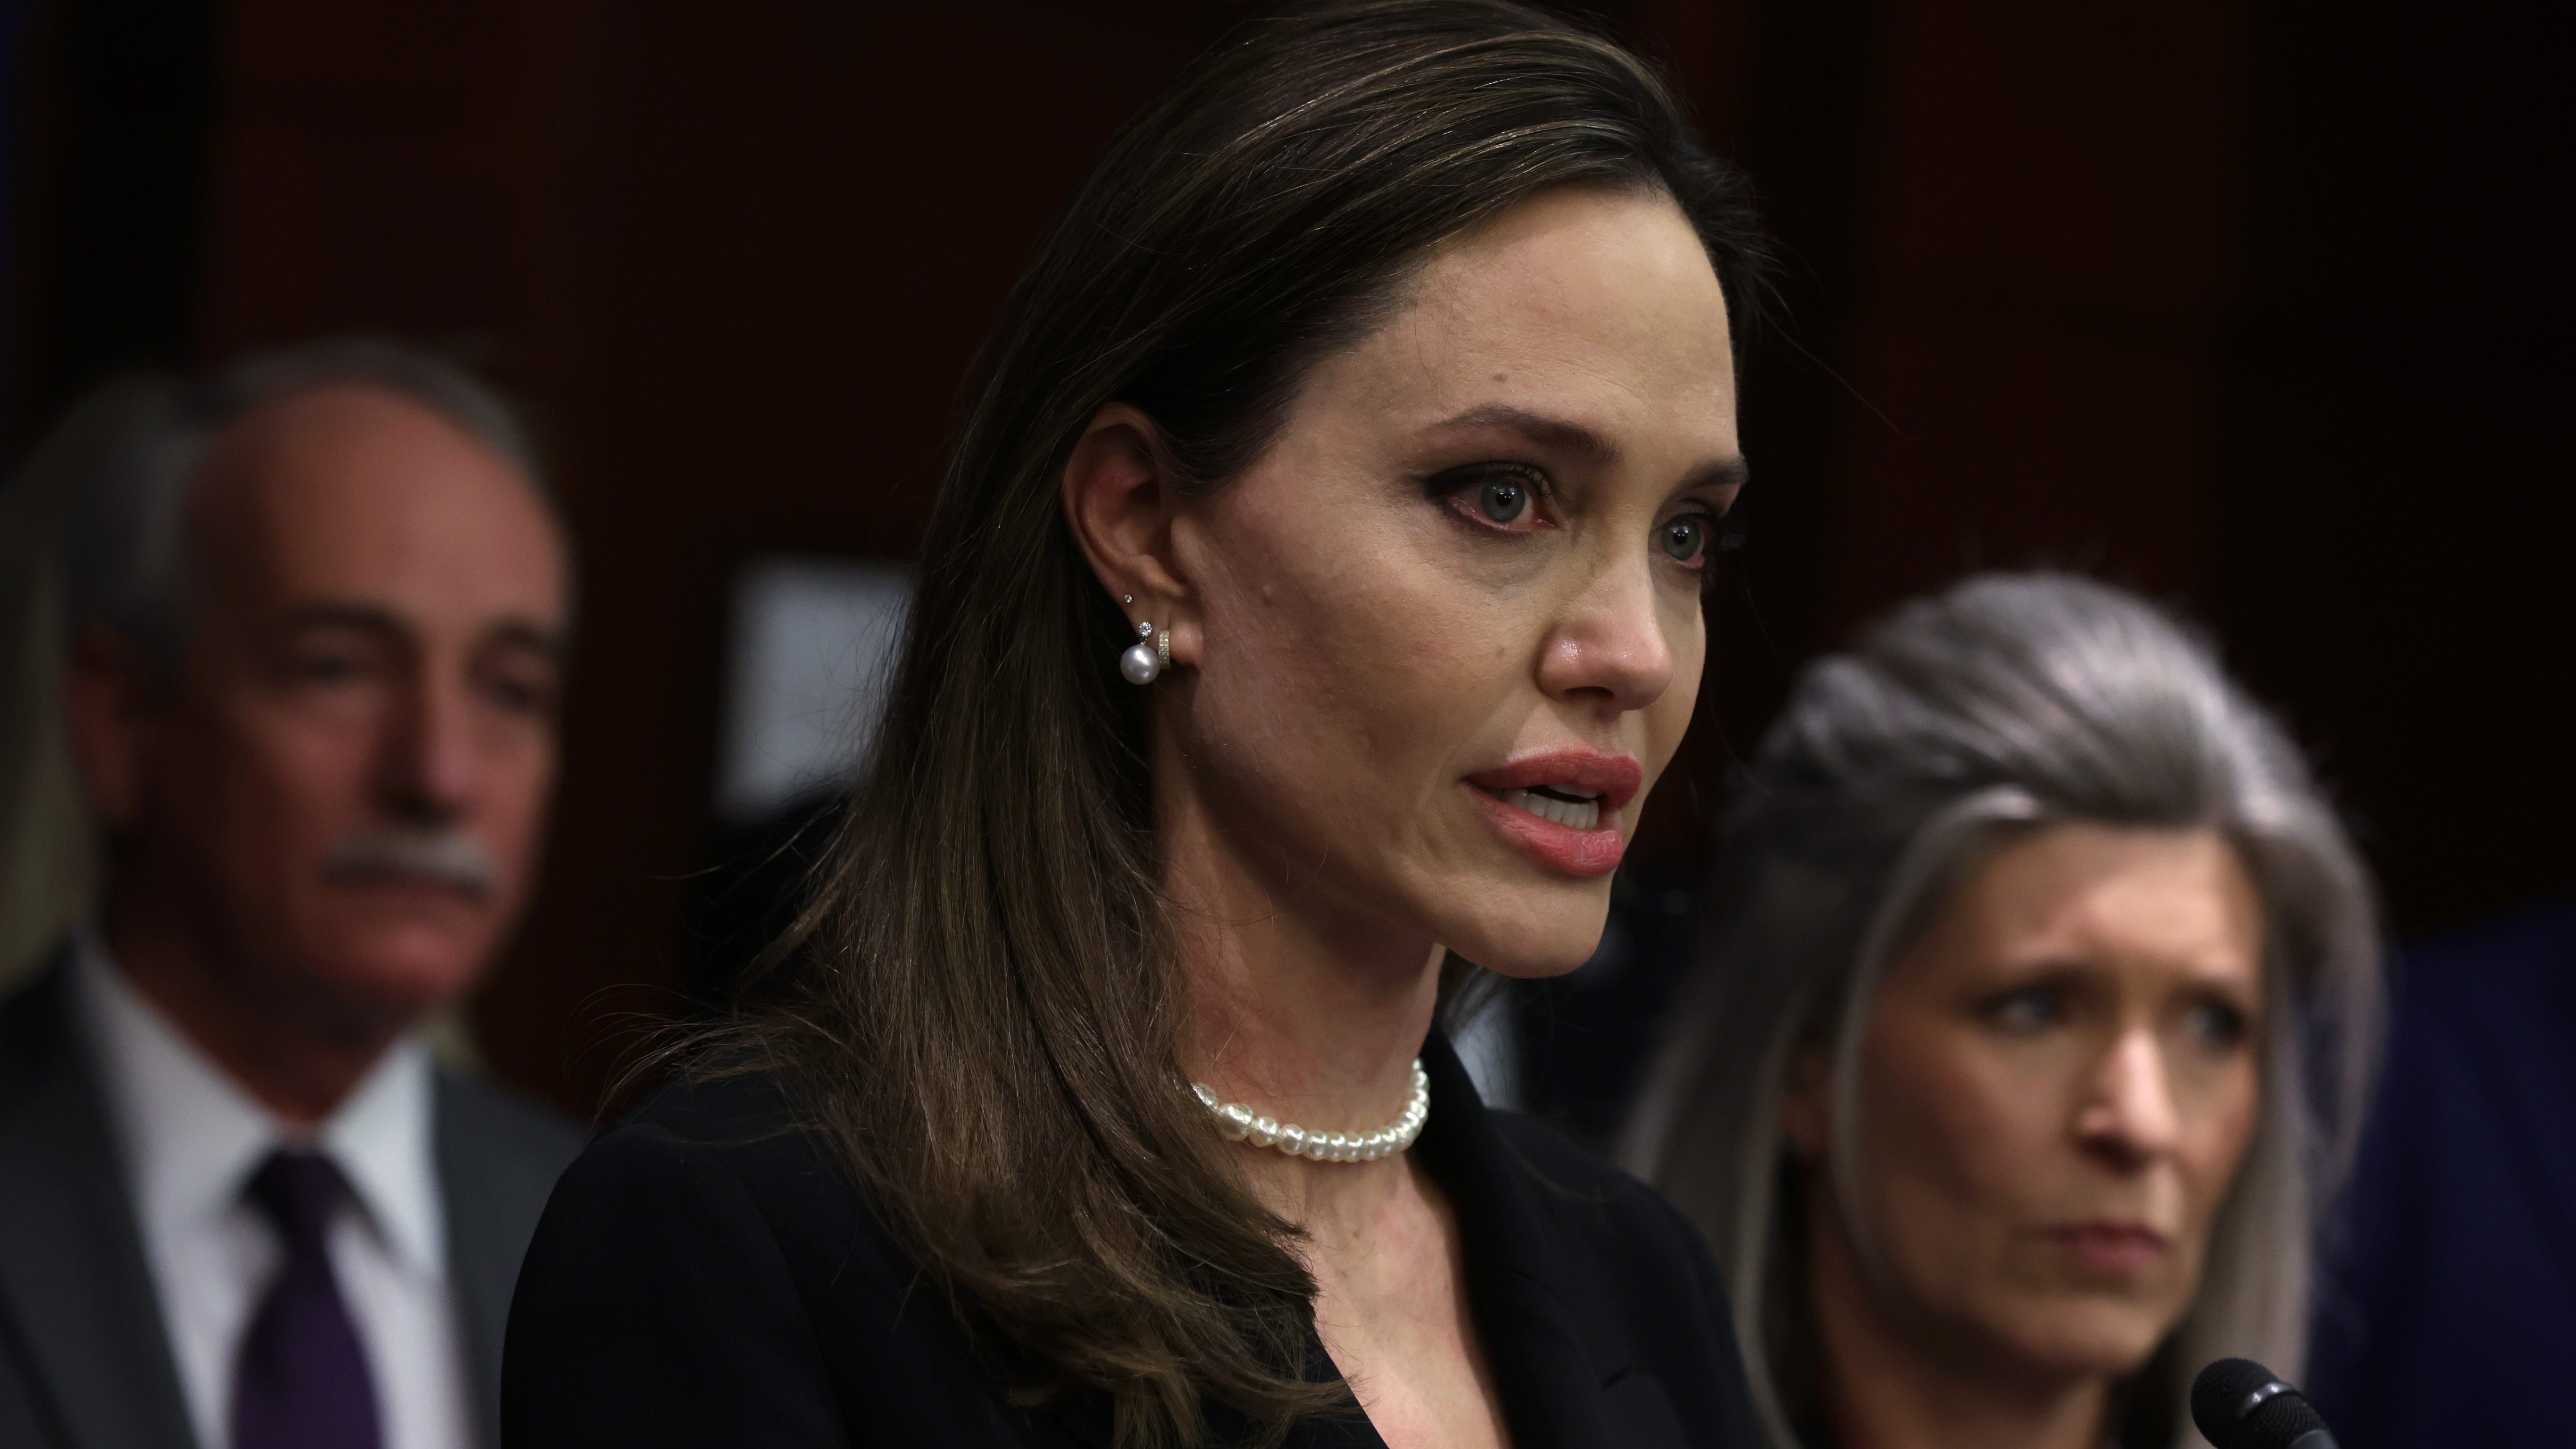 Újabb részletek és fotók is előkerültek a 2016-os incidensről, mely során Brad Pitt egy magángépen bántalmazhatta Angelina Jolie-t